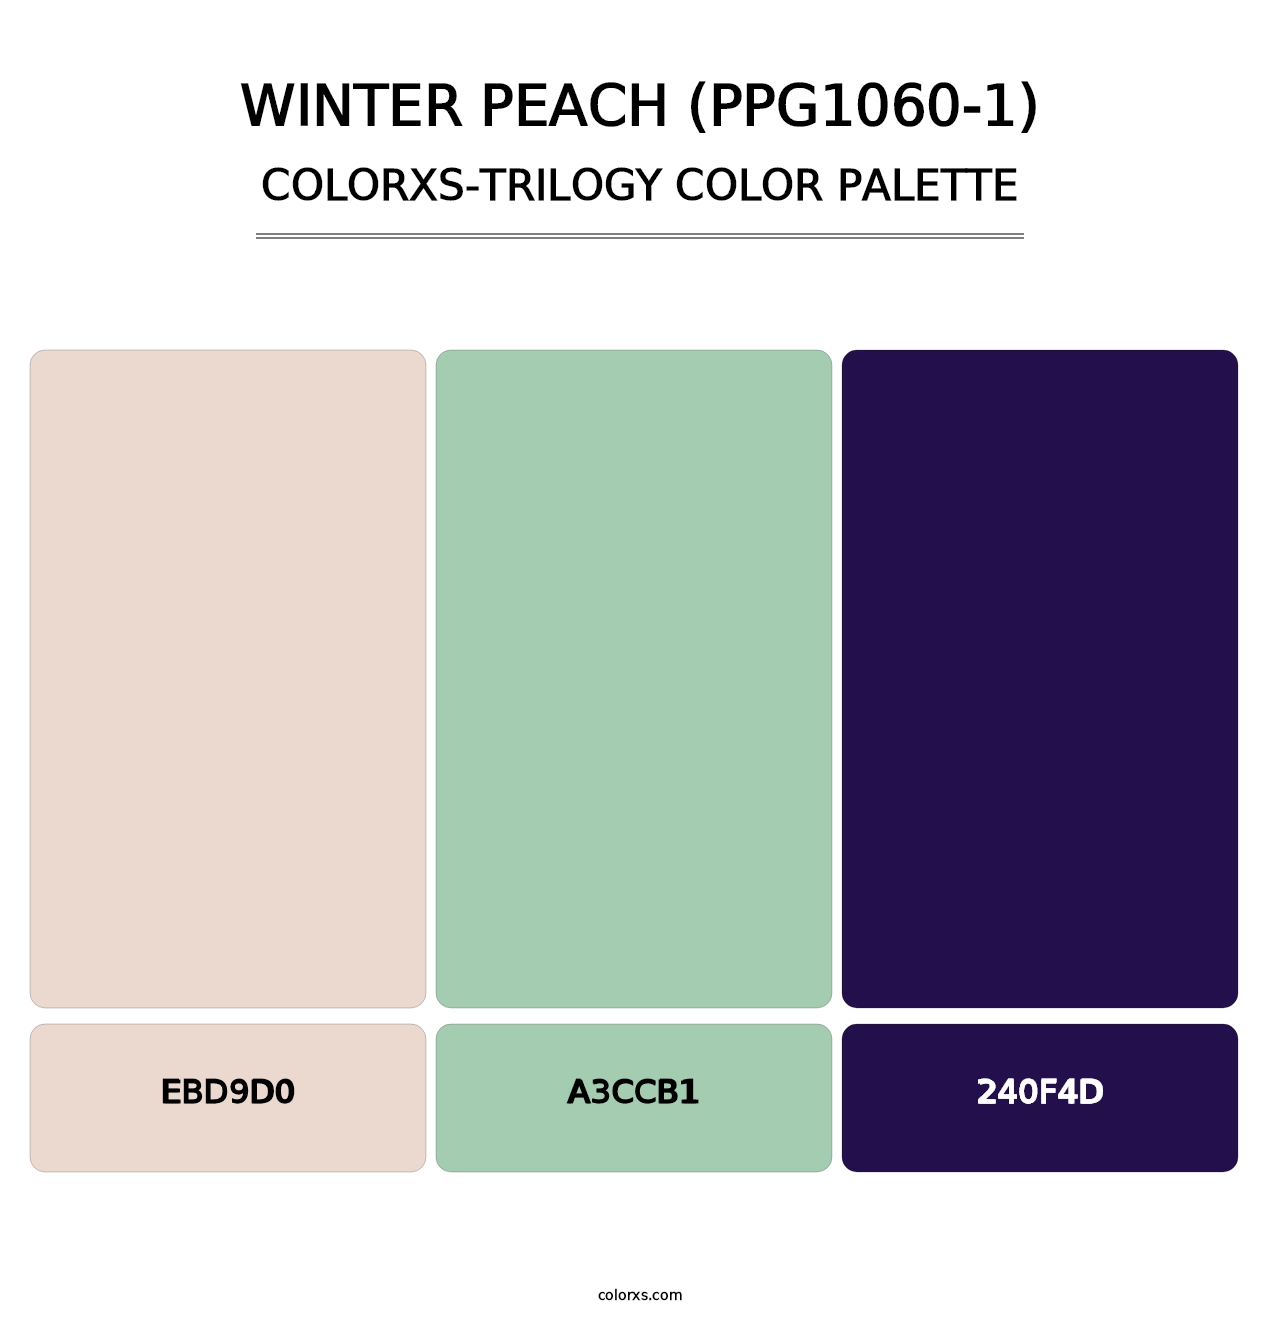 Winter Peach (PPG1060-1) - Colorxs Trilogy Palette